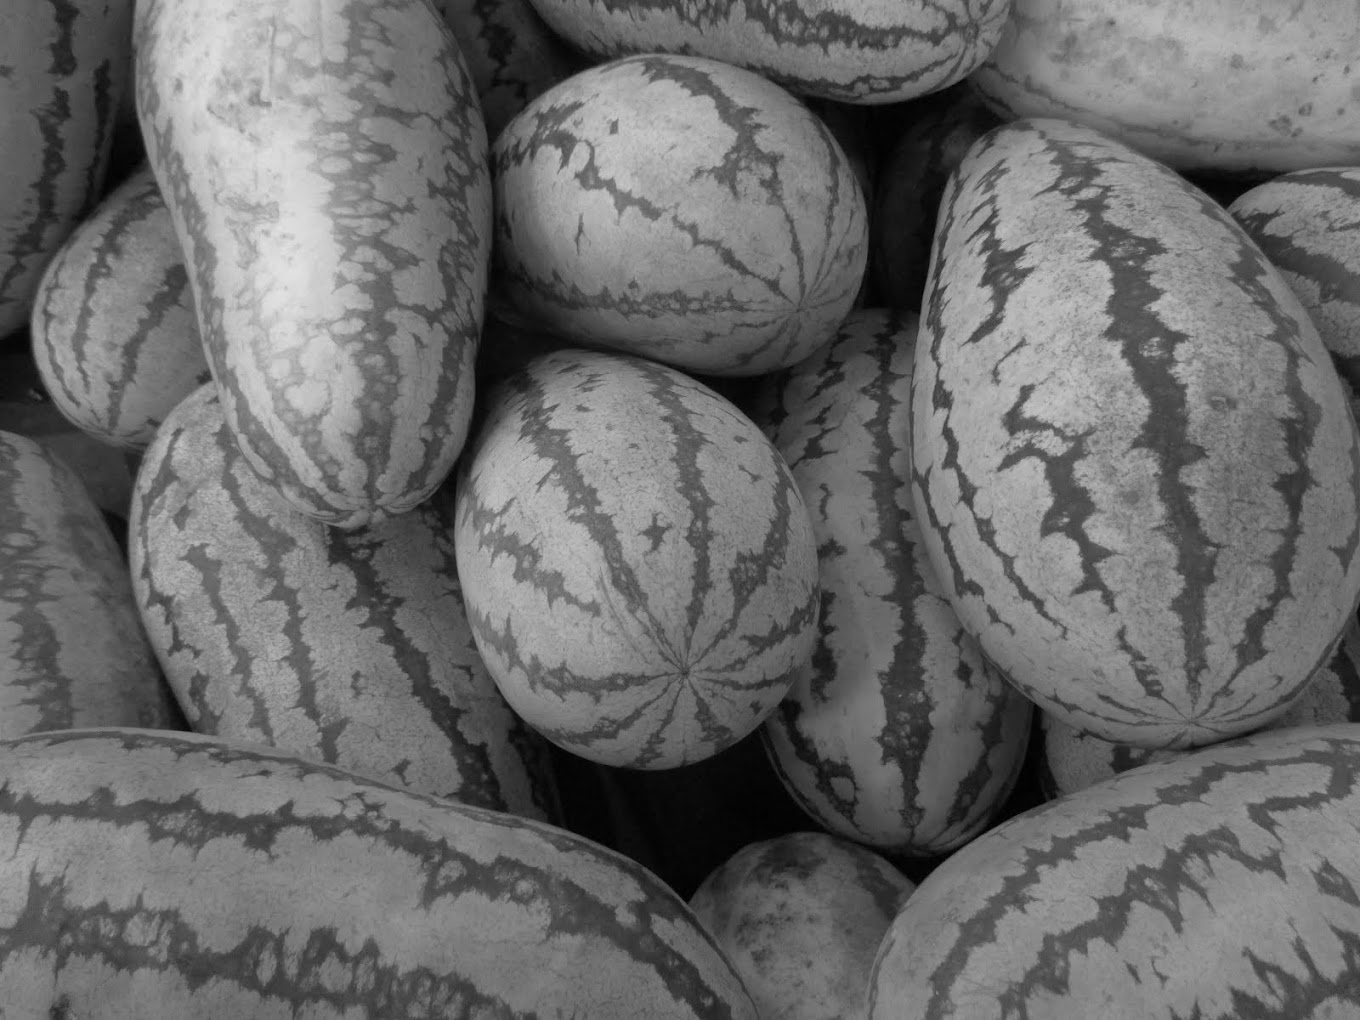 CA - CROCODILE WATERMELON - crocodile watermelon for sale - new orleans - LA / USA - 2016